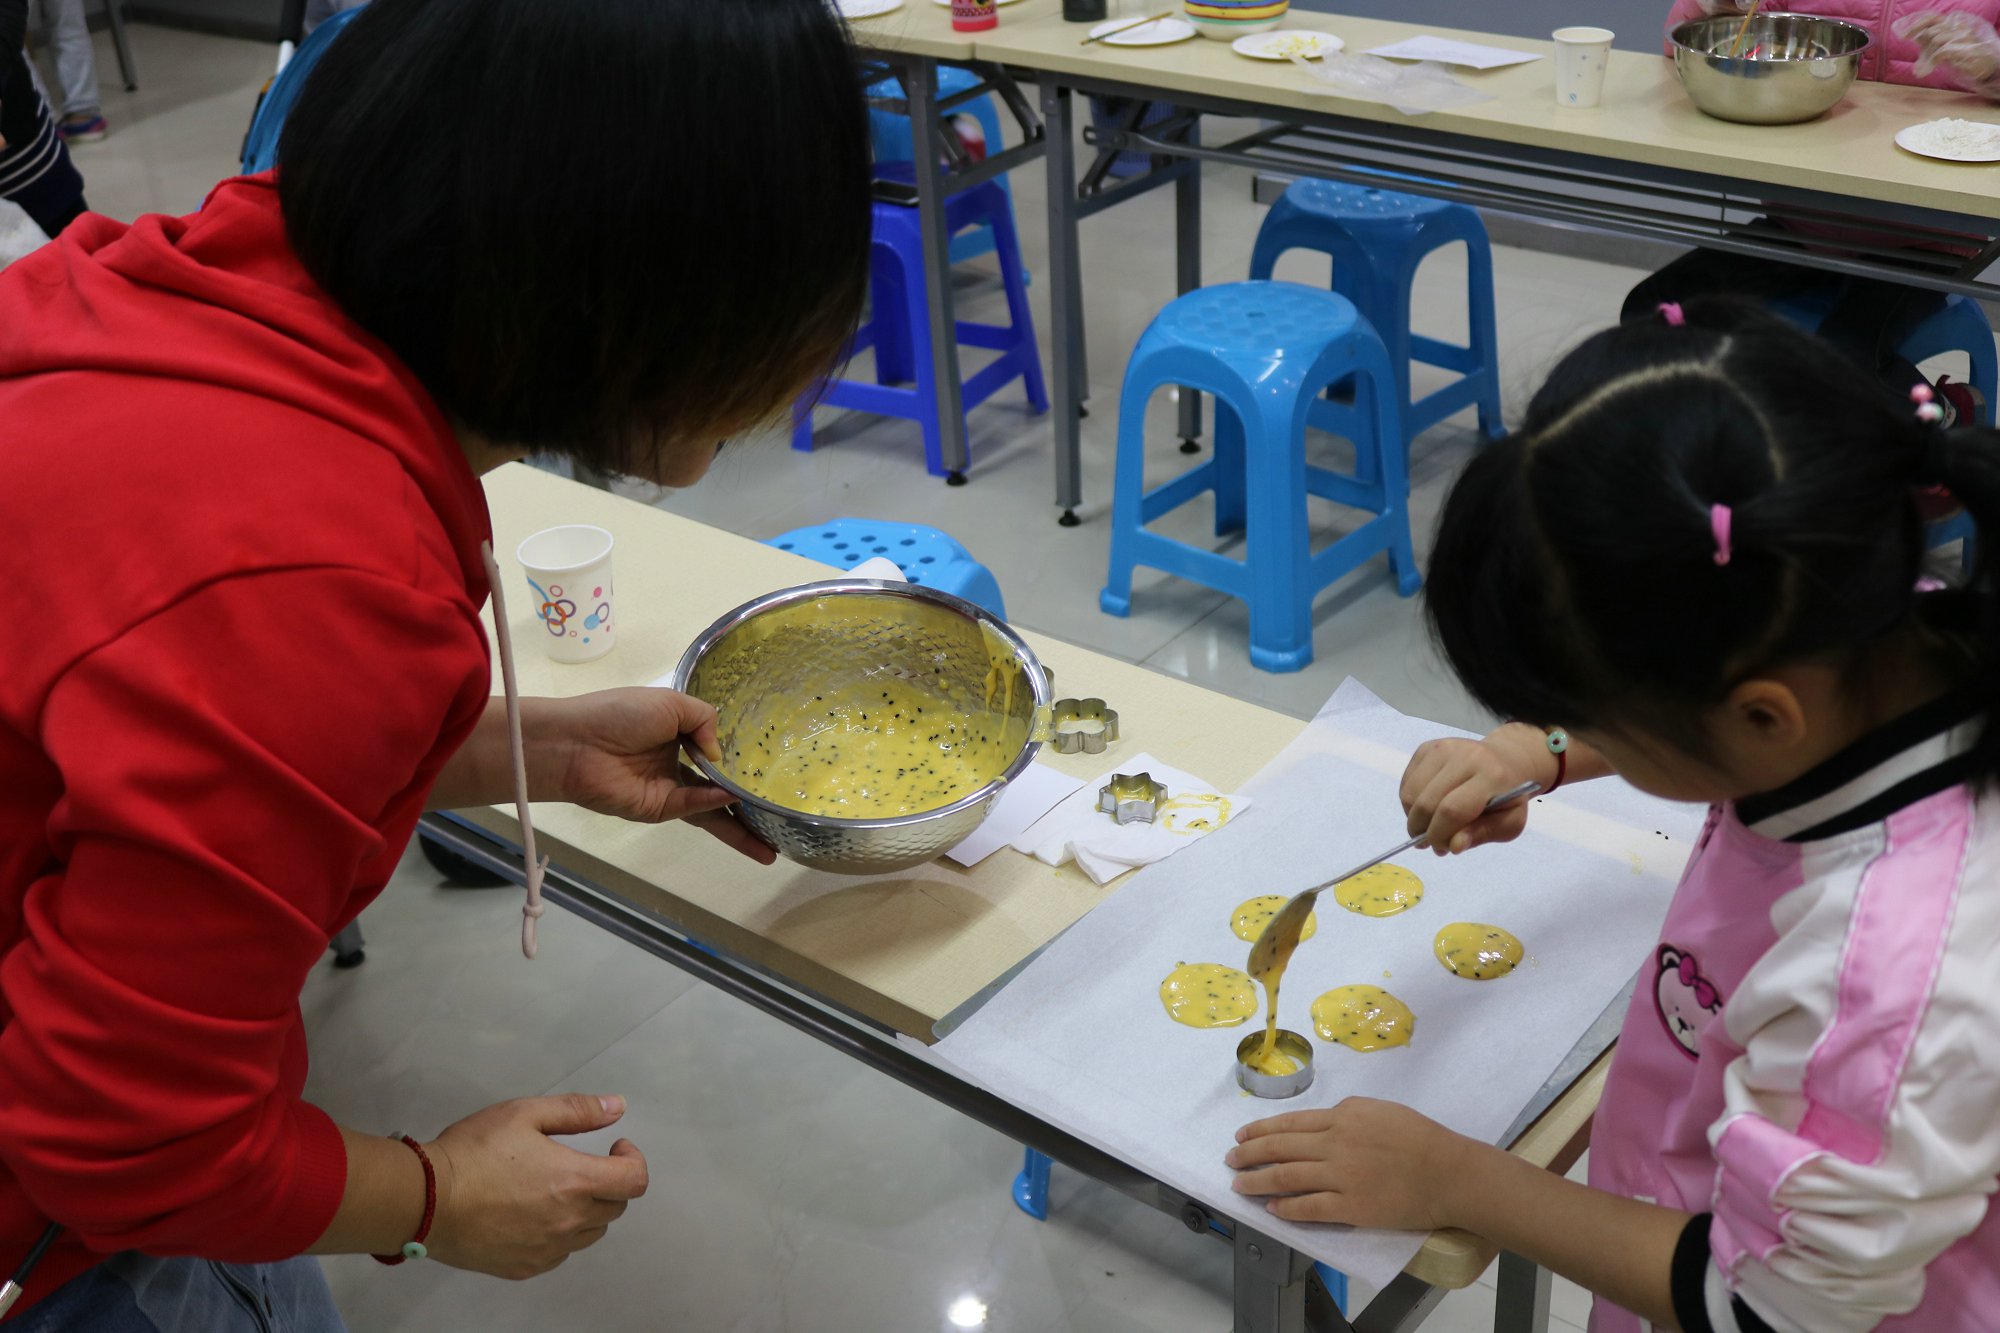 母亲和孩子的女儿们都在做饼干 库存图片. 图片 包括有 了解, 女孩, 烘烤, 成人, 面团, 子项, 女儿 - 172709627